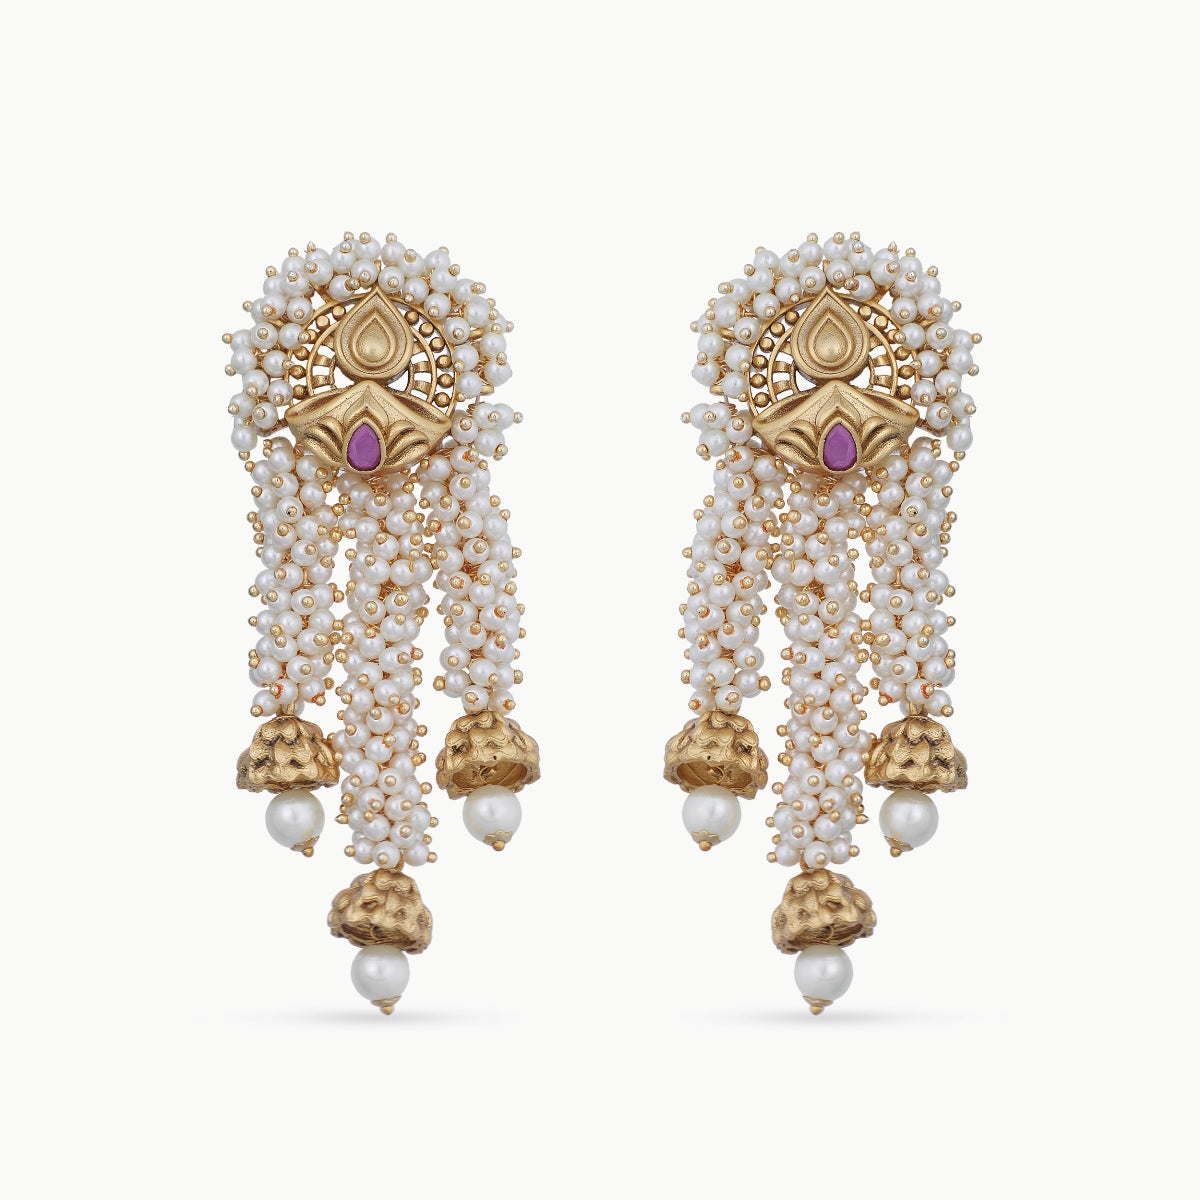 2018 6 Style 2 Colors Gold/Silver Women Fashion Double Side Crystal Flower  Shaped Earings Hypoallergenic Ear Stud Earrings | Wish | Ear jewelry,  Diamond earrings studs, Ear stud earrings